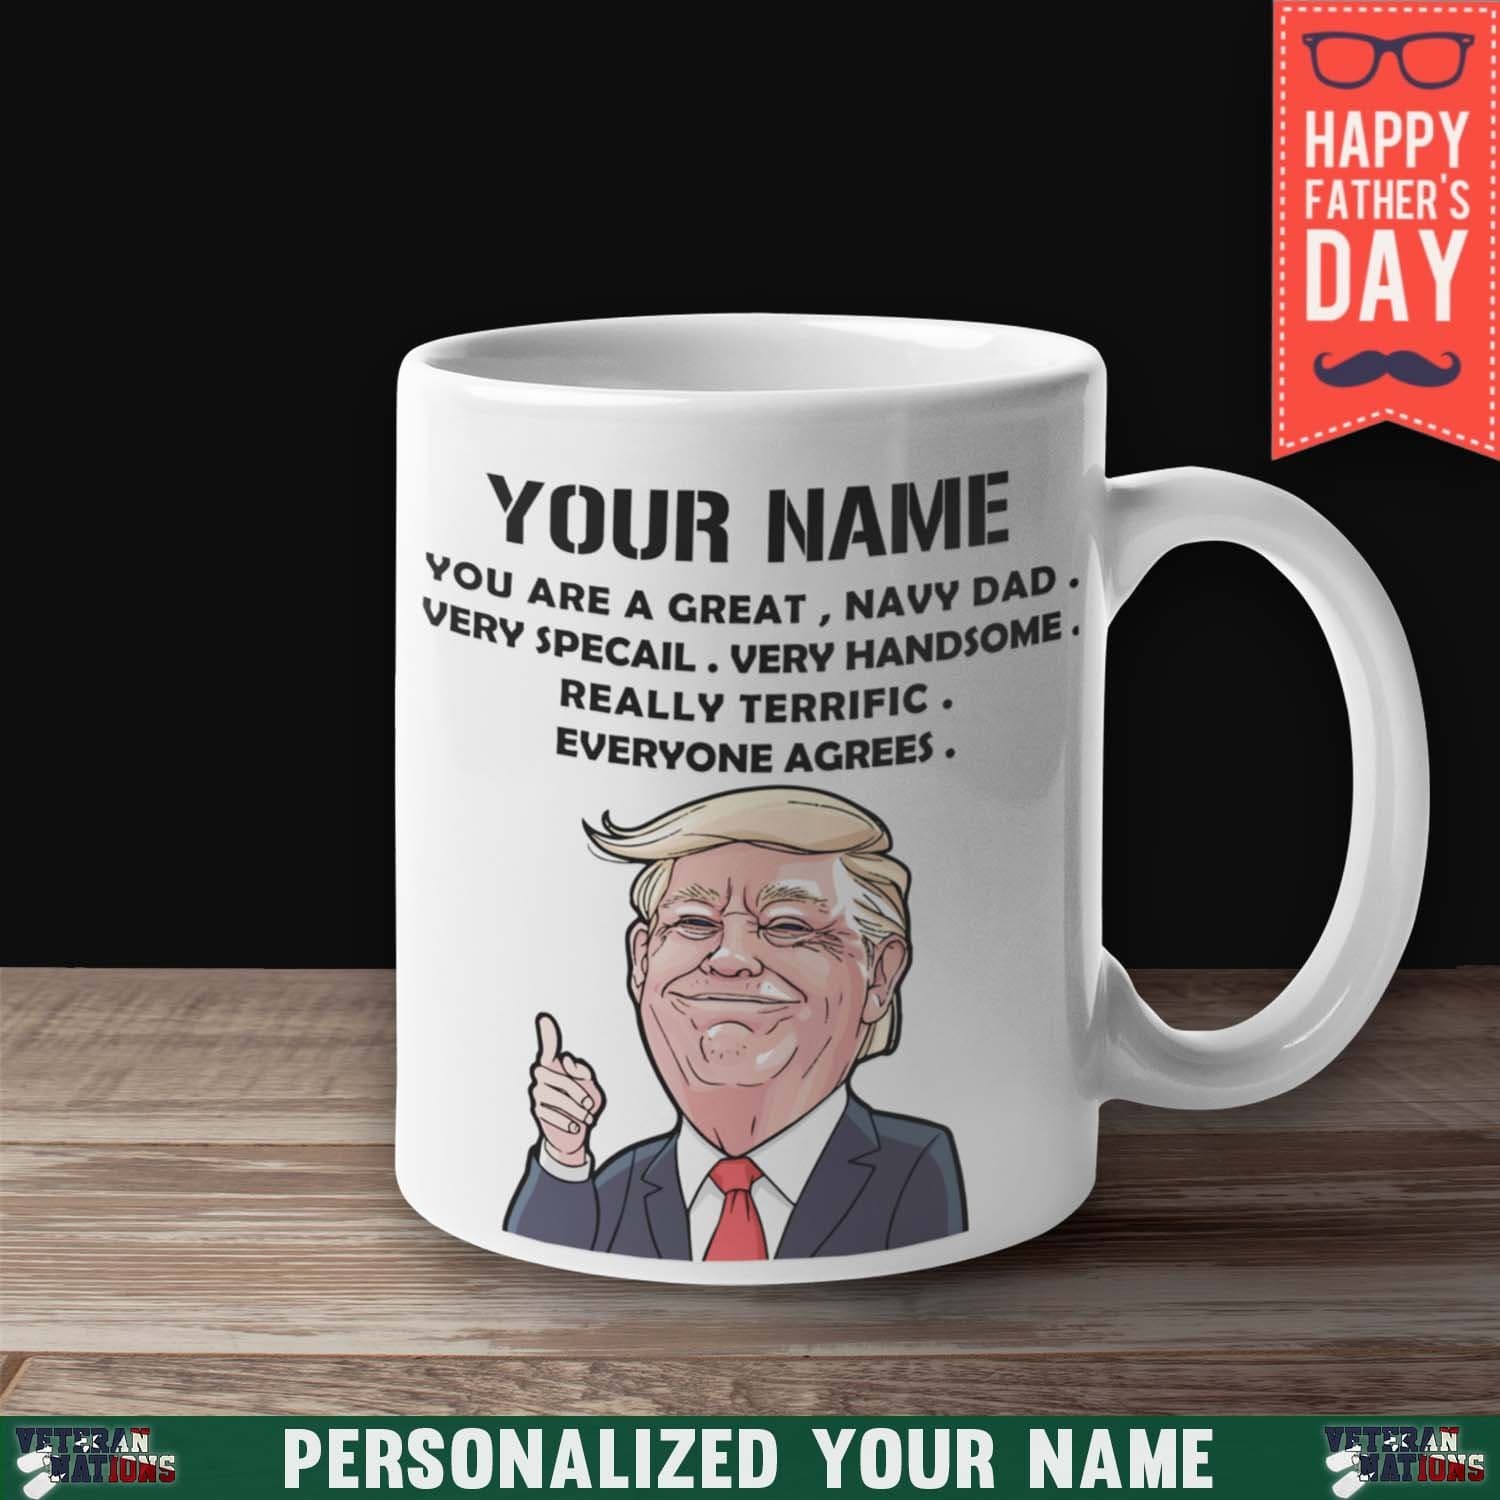 Personalized Mug - Great Navy Dad 11 oz. White Mug-Mug-Personalized-Navy-Logo-Veterans Nation